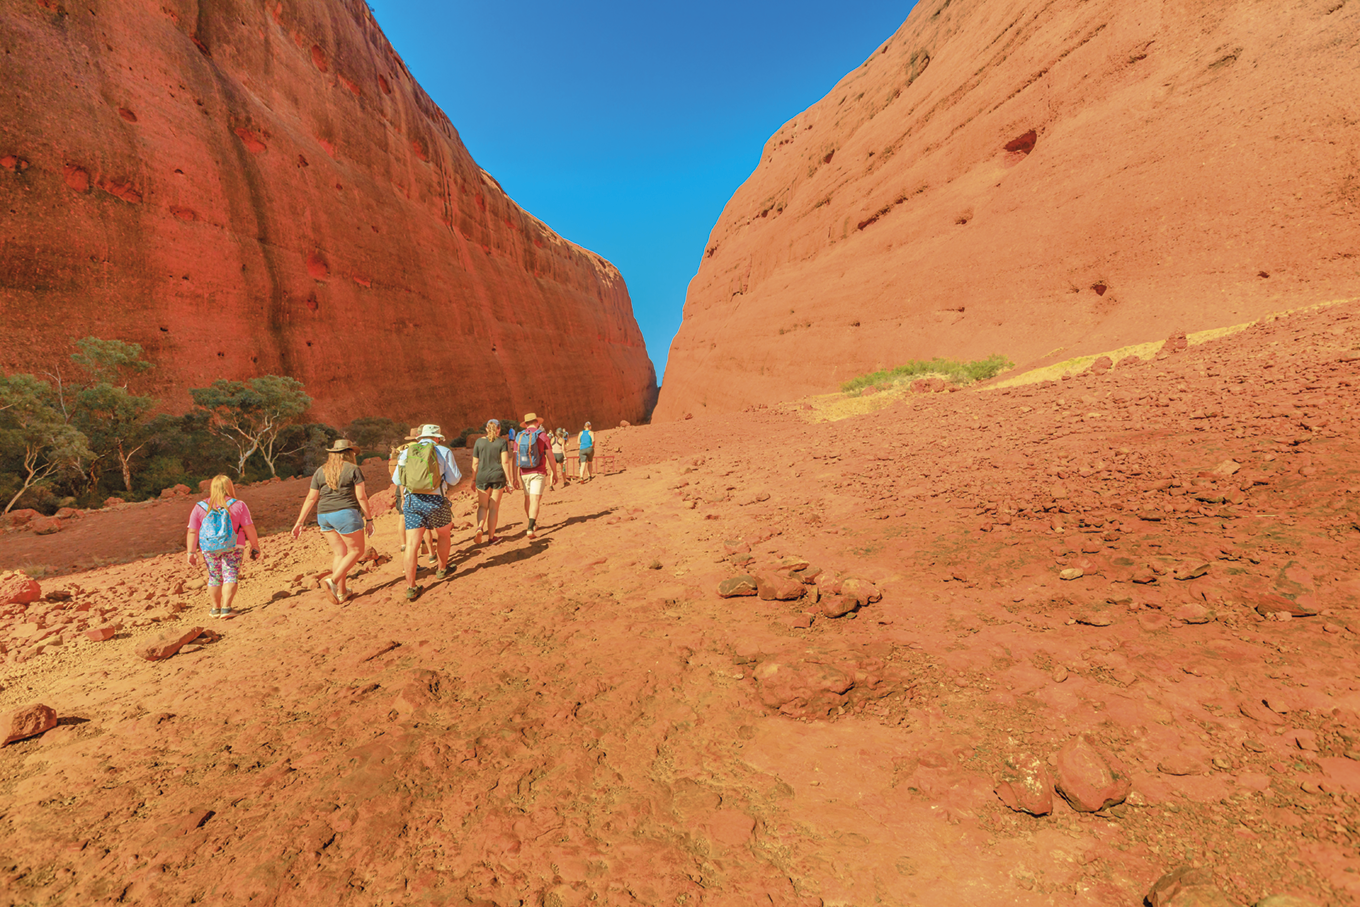 Fotografia. Pessoas caminhando em área deserta com grandes formações rochosas sedimentares.